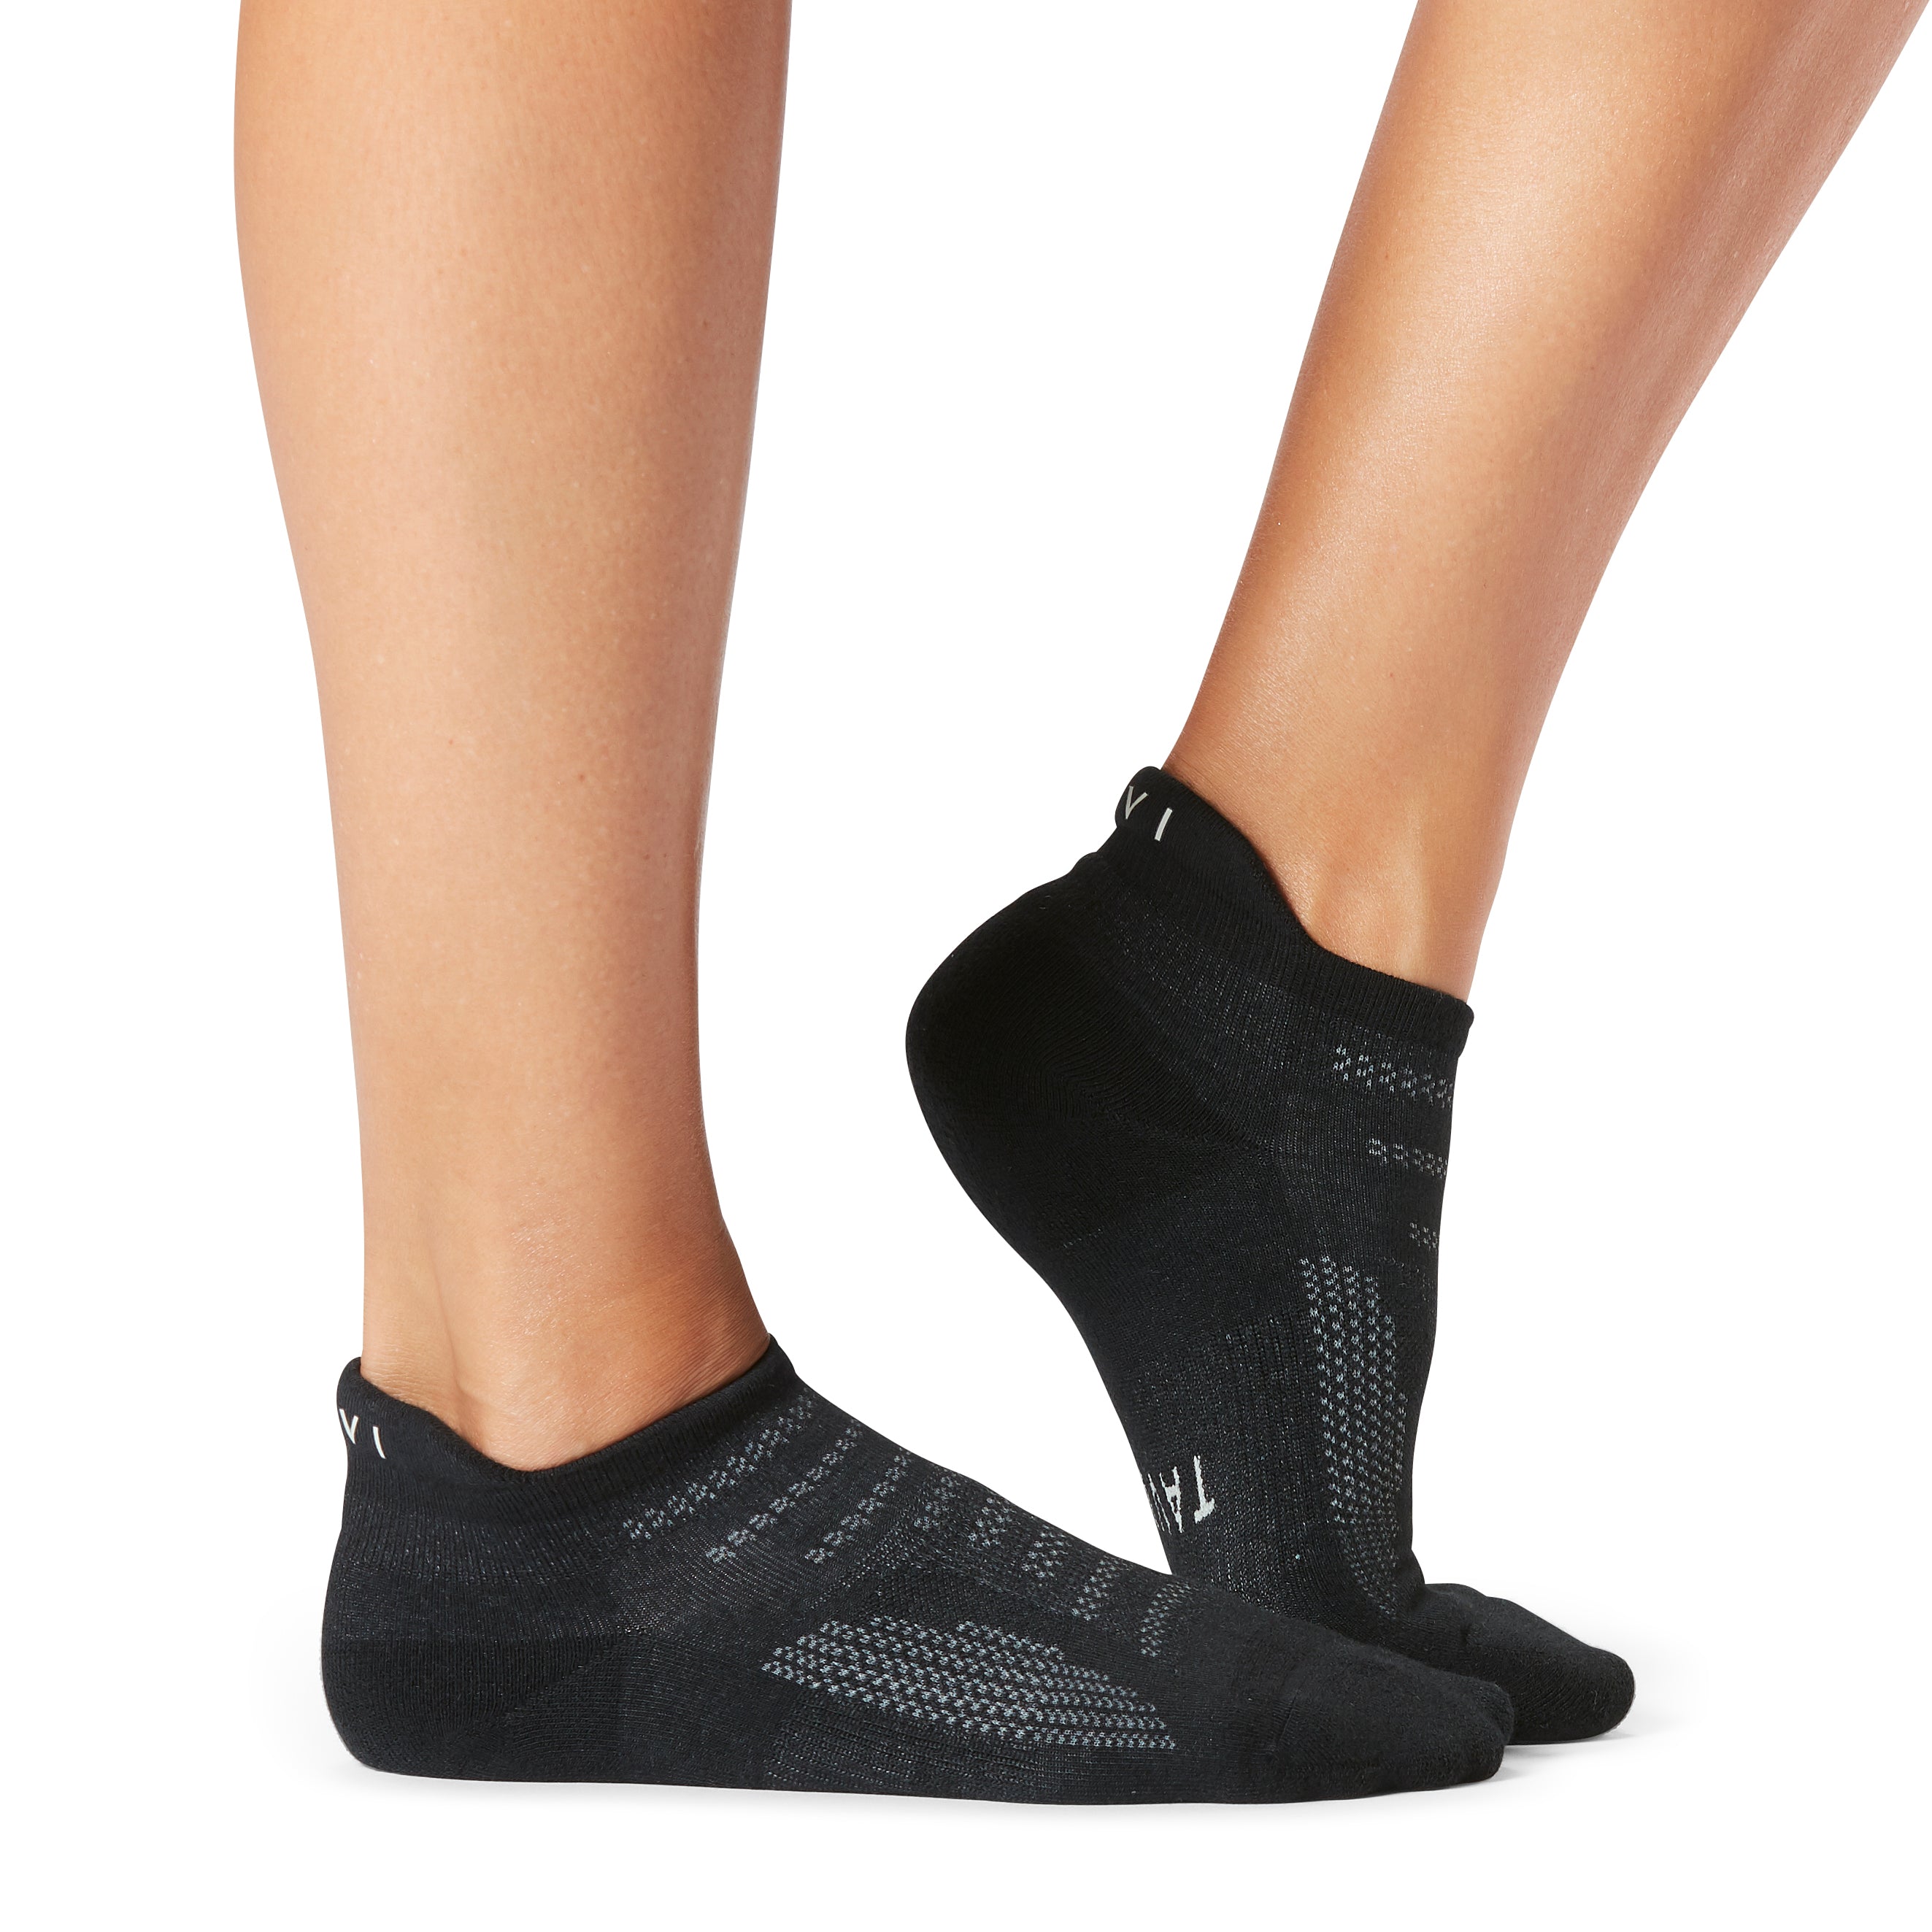 Parker Thin Sport Socks – ToeSox, Tavi